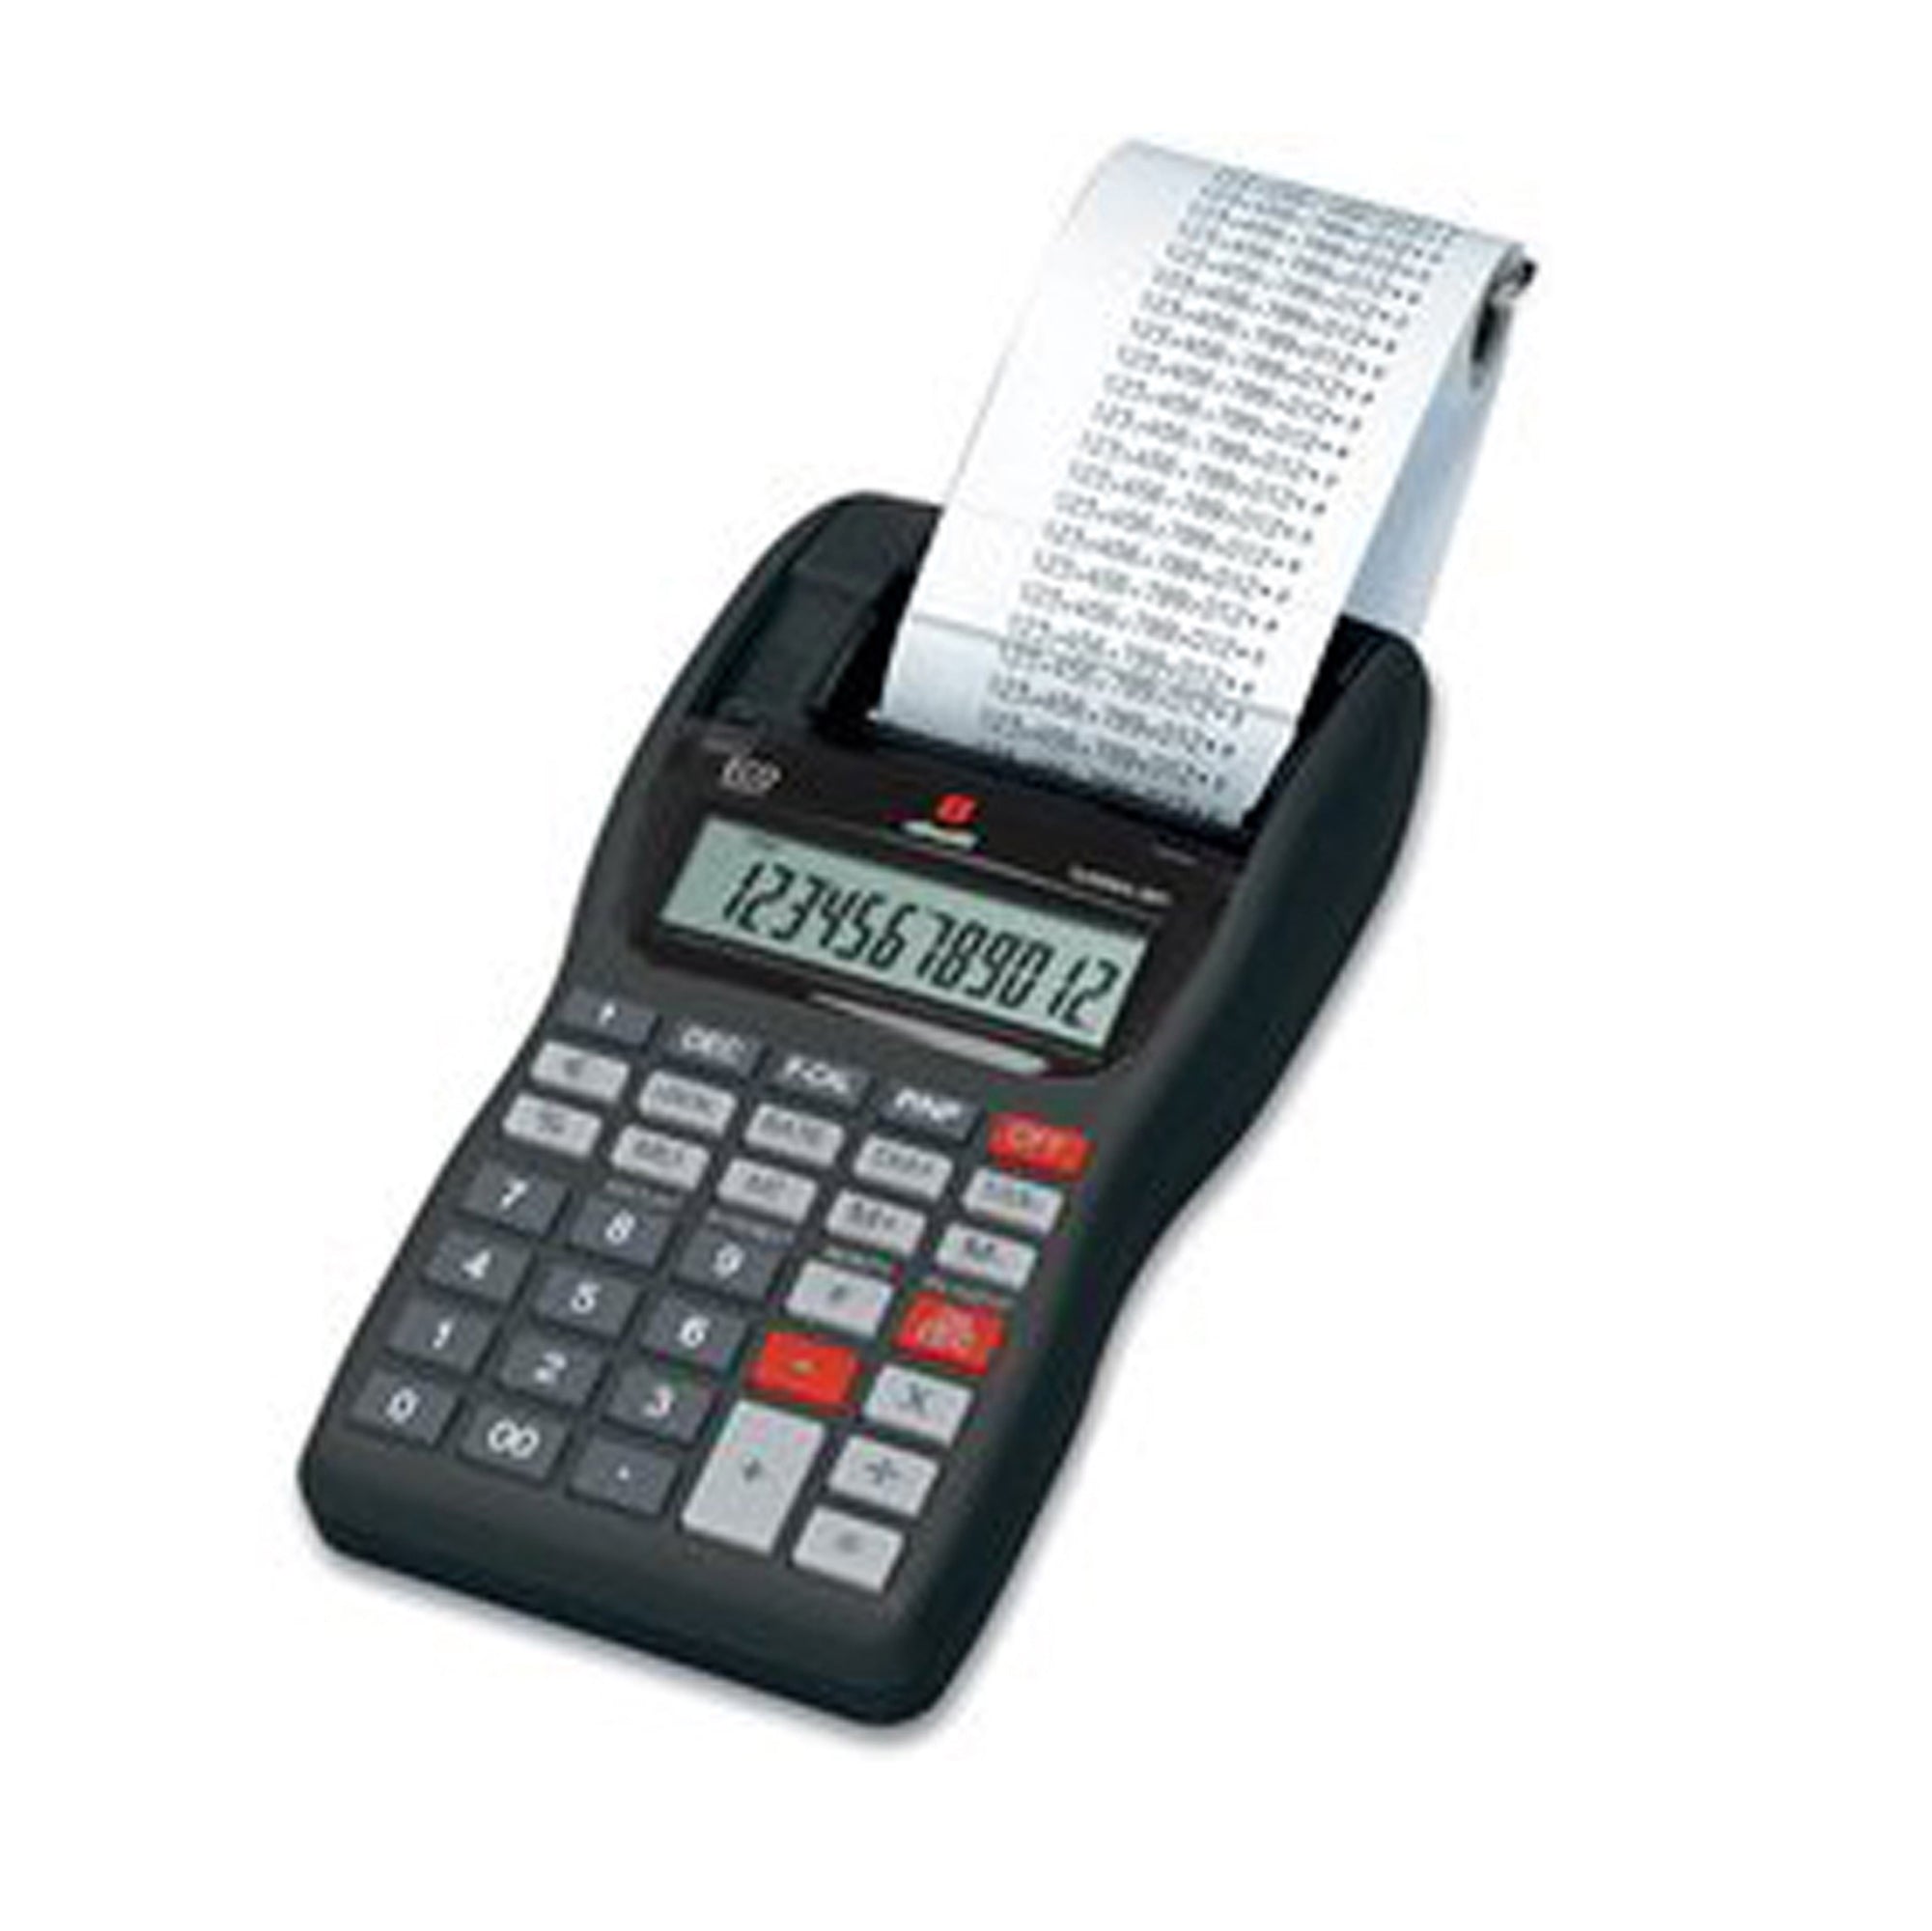 olivetti-calcolatrice-summa-301-portatile-scrivente-12-cifre-nero